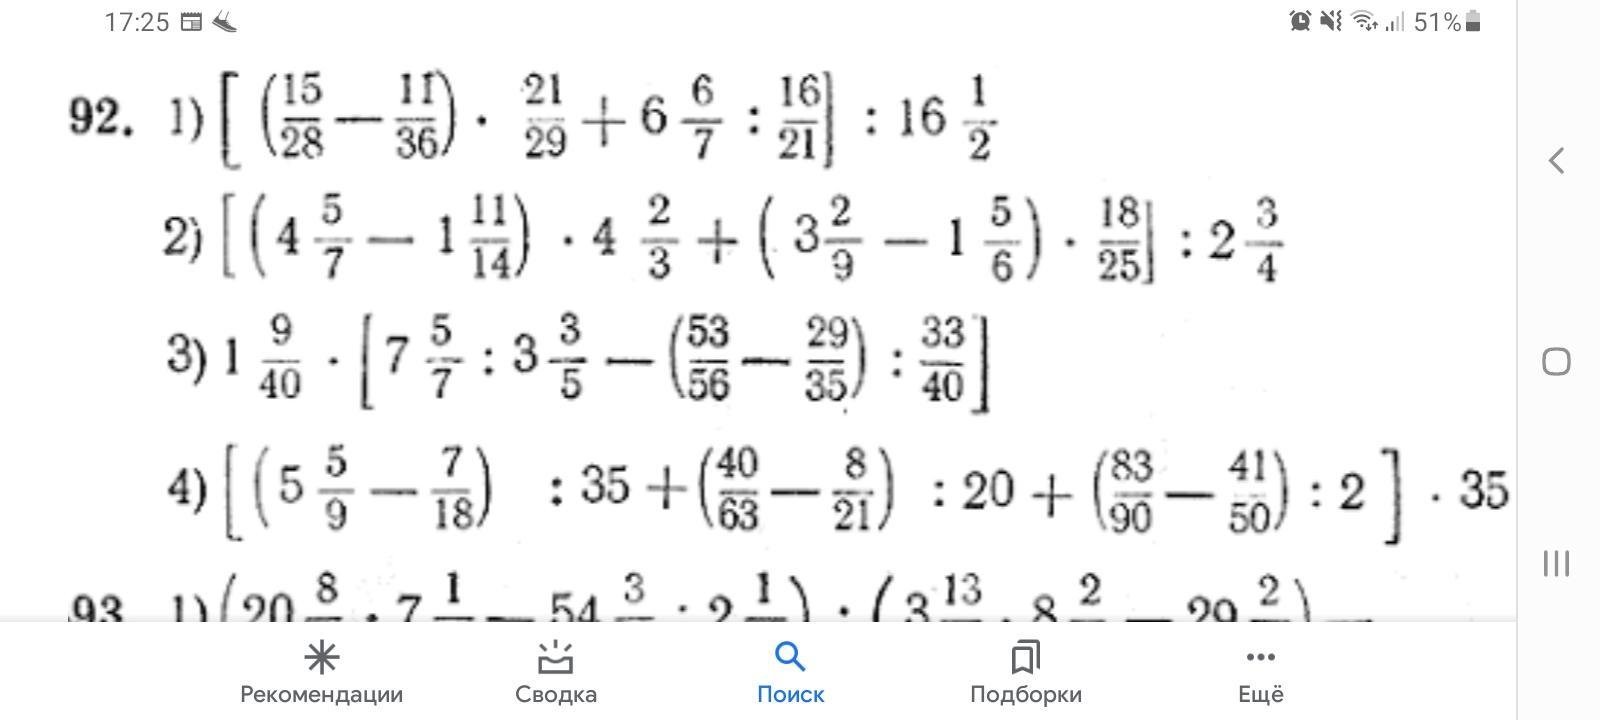 Калькулятор примеров по математике 6 класс. Математика 5 класс примеры на все действия с обыкновенными дробями. Примеры на все действия с обыкновенными дробями 5 класс с ответами. Математика 5 класс дроби сложные. Пример на все действия с десятичными и обыкновенными дробями 5 класс.